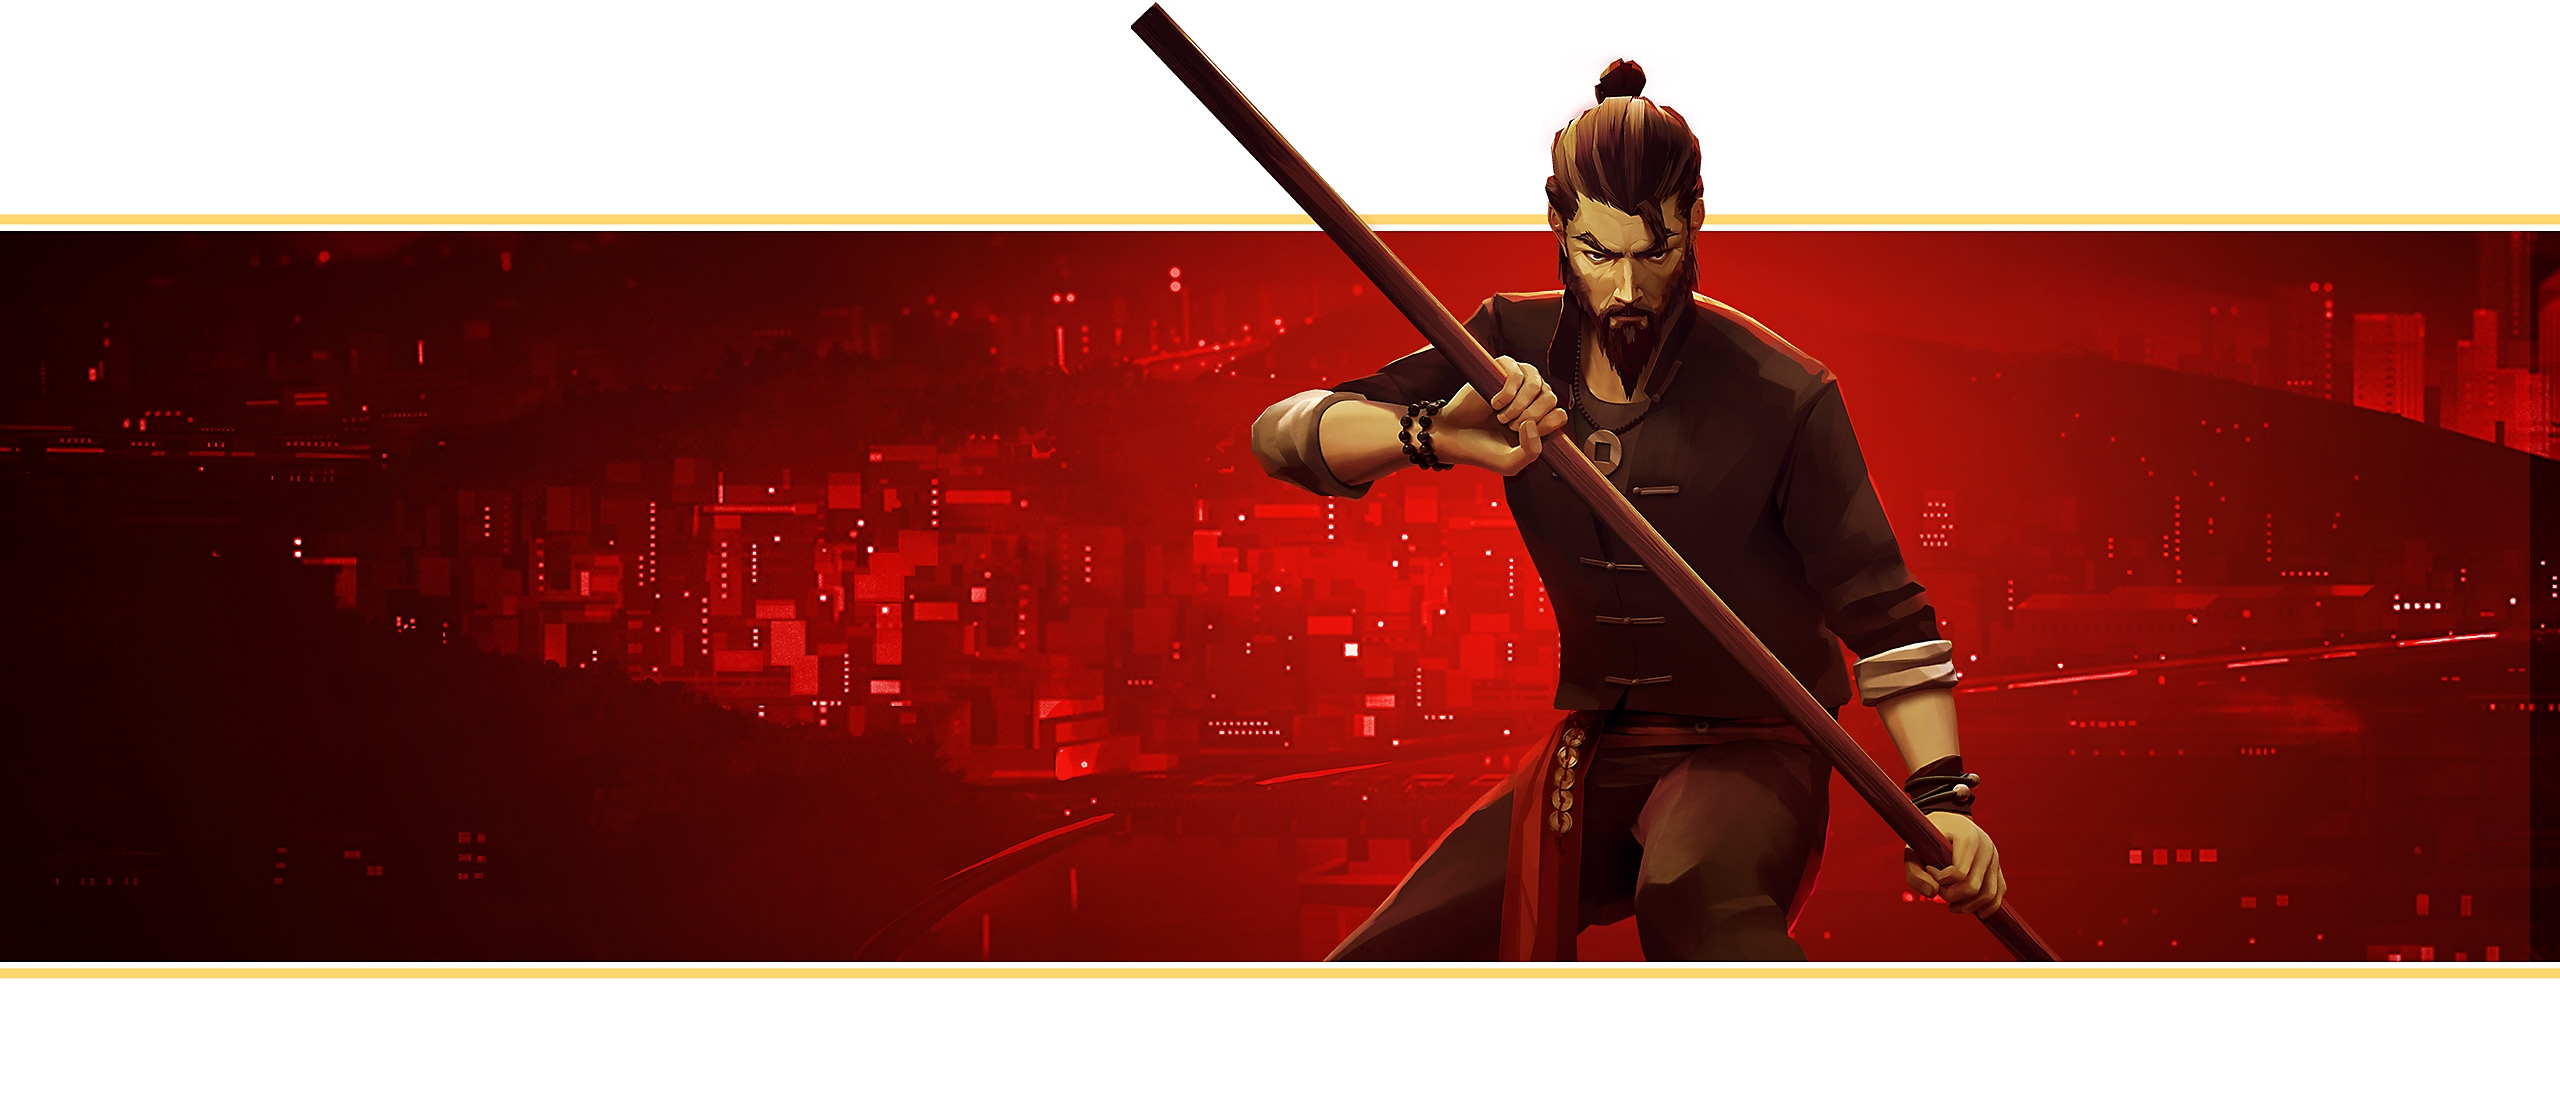 La imagen de Sifu está creada a partir de las ilustraciones del juego; el personaje principal, con el rostro al descubierto, sostiene un bastón de madera con ambas manos.